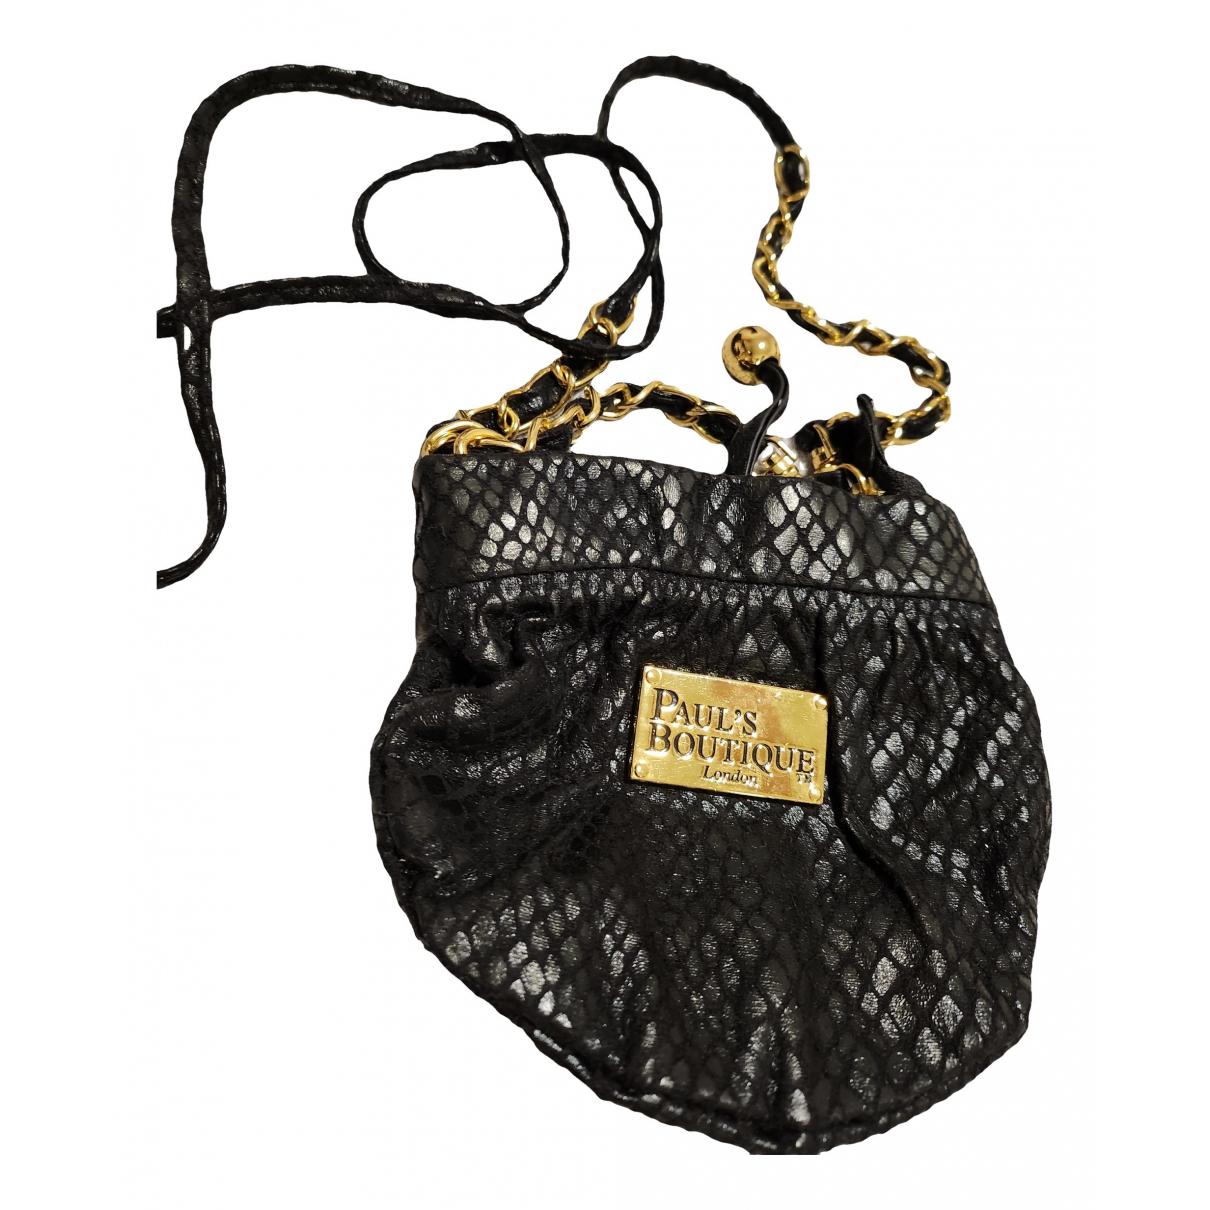 PAULS BOUTIQUE Handbags for Women - Vestiaire Collective